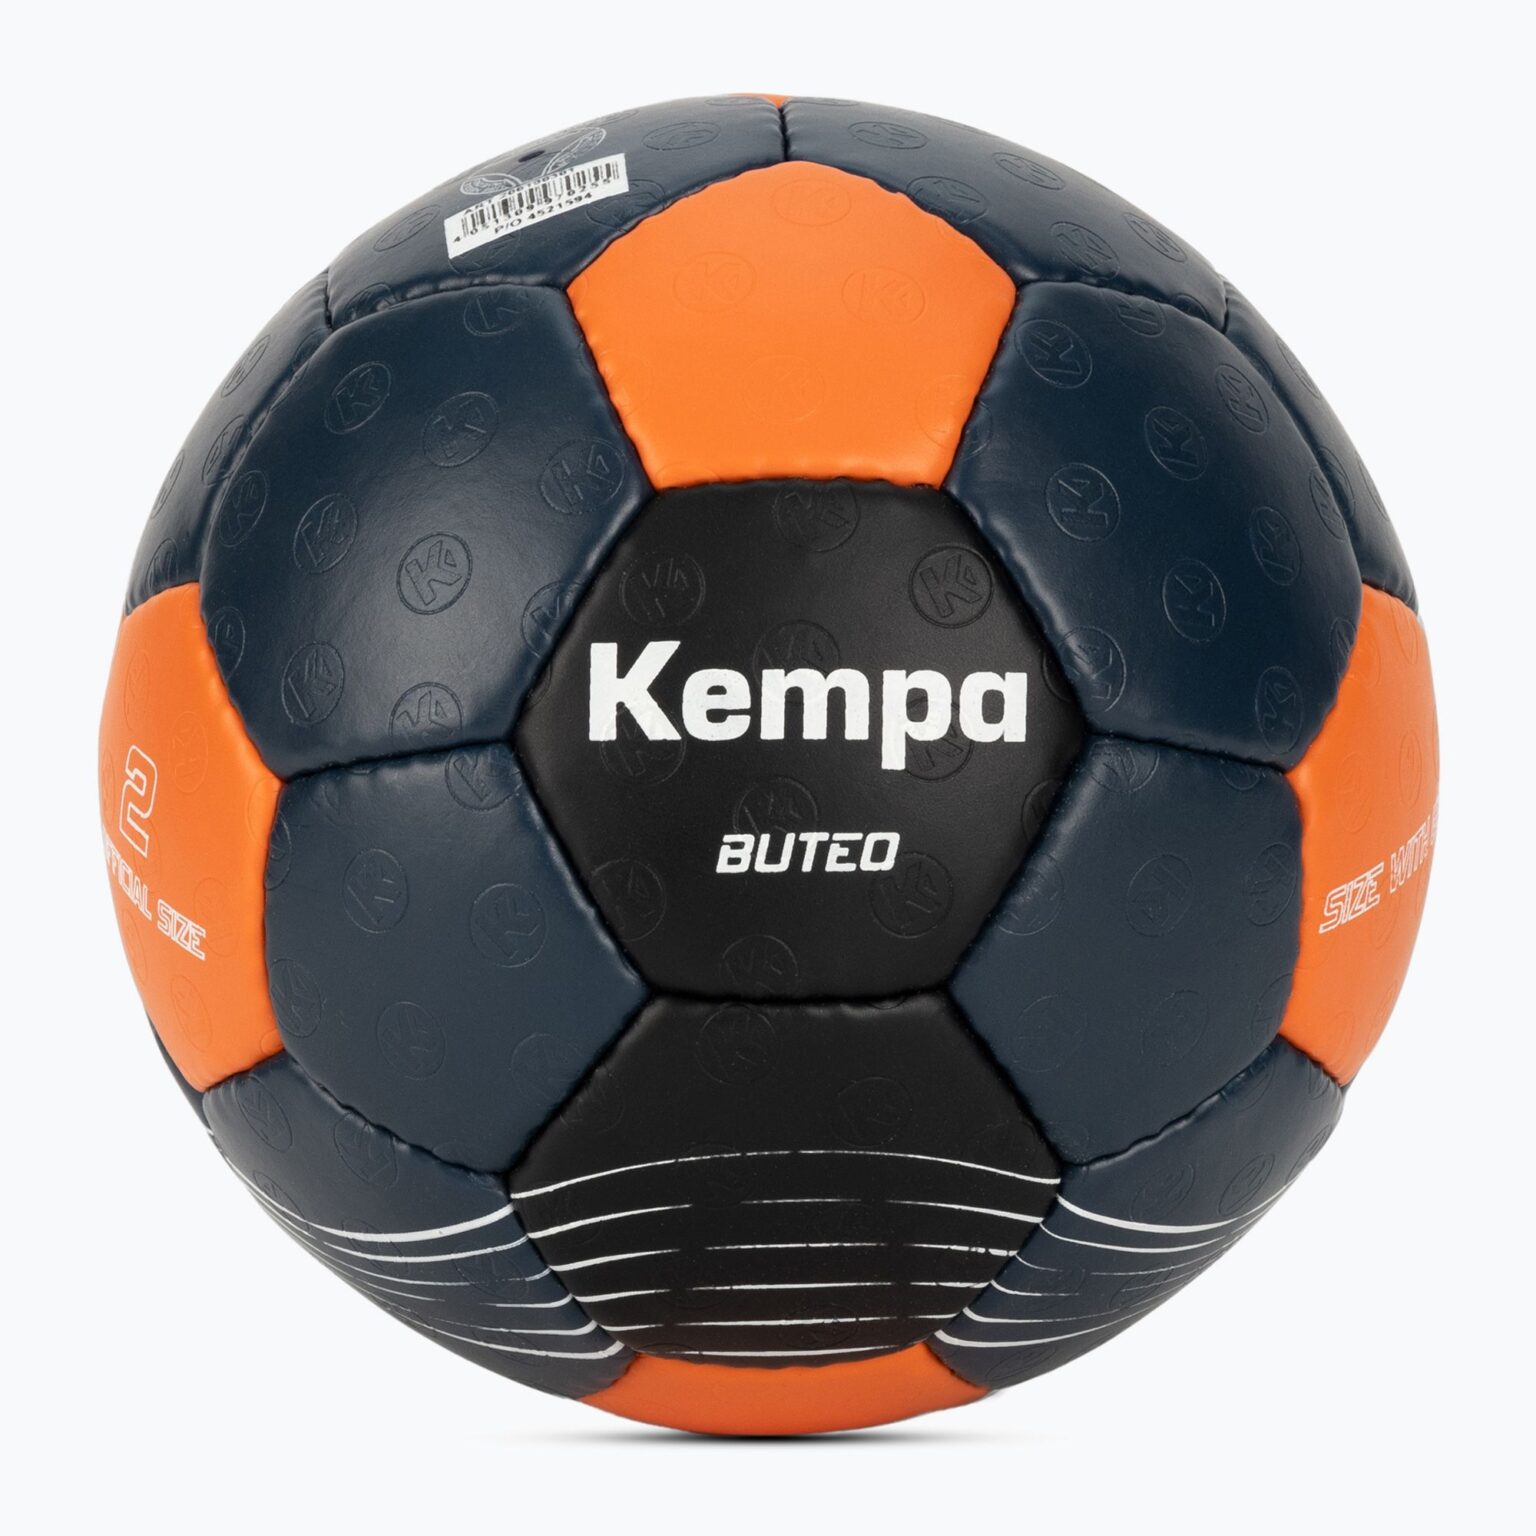 Piłka do piłki ręcznej Kempa Buteo ciemny turkus/pomarańczowa rozmiar 2